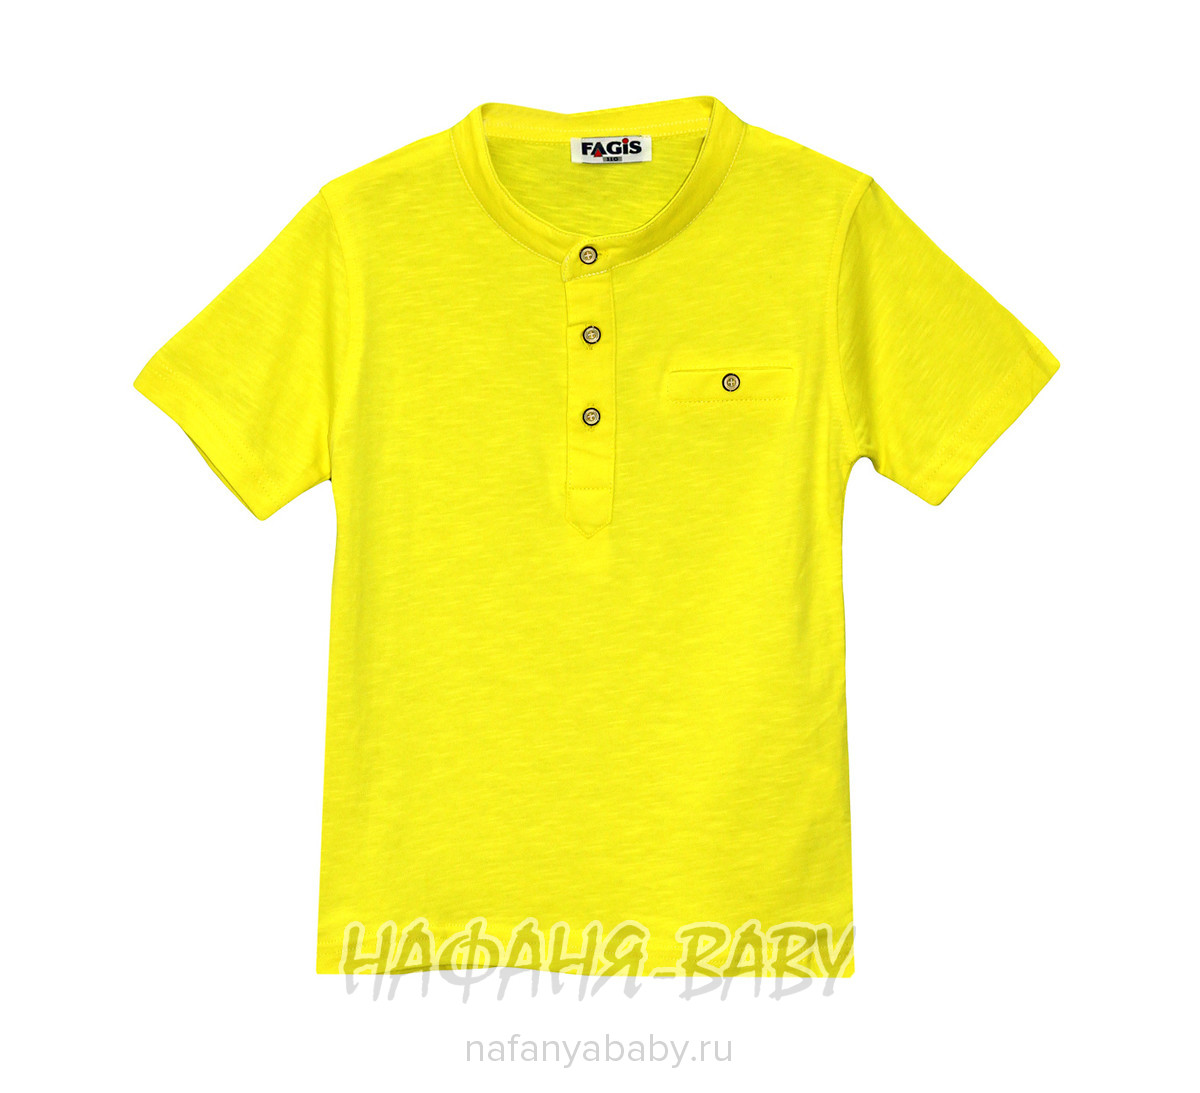 Детская футболка FAGIS, купить в интернет магазине Нафаня. арт: 9010.